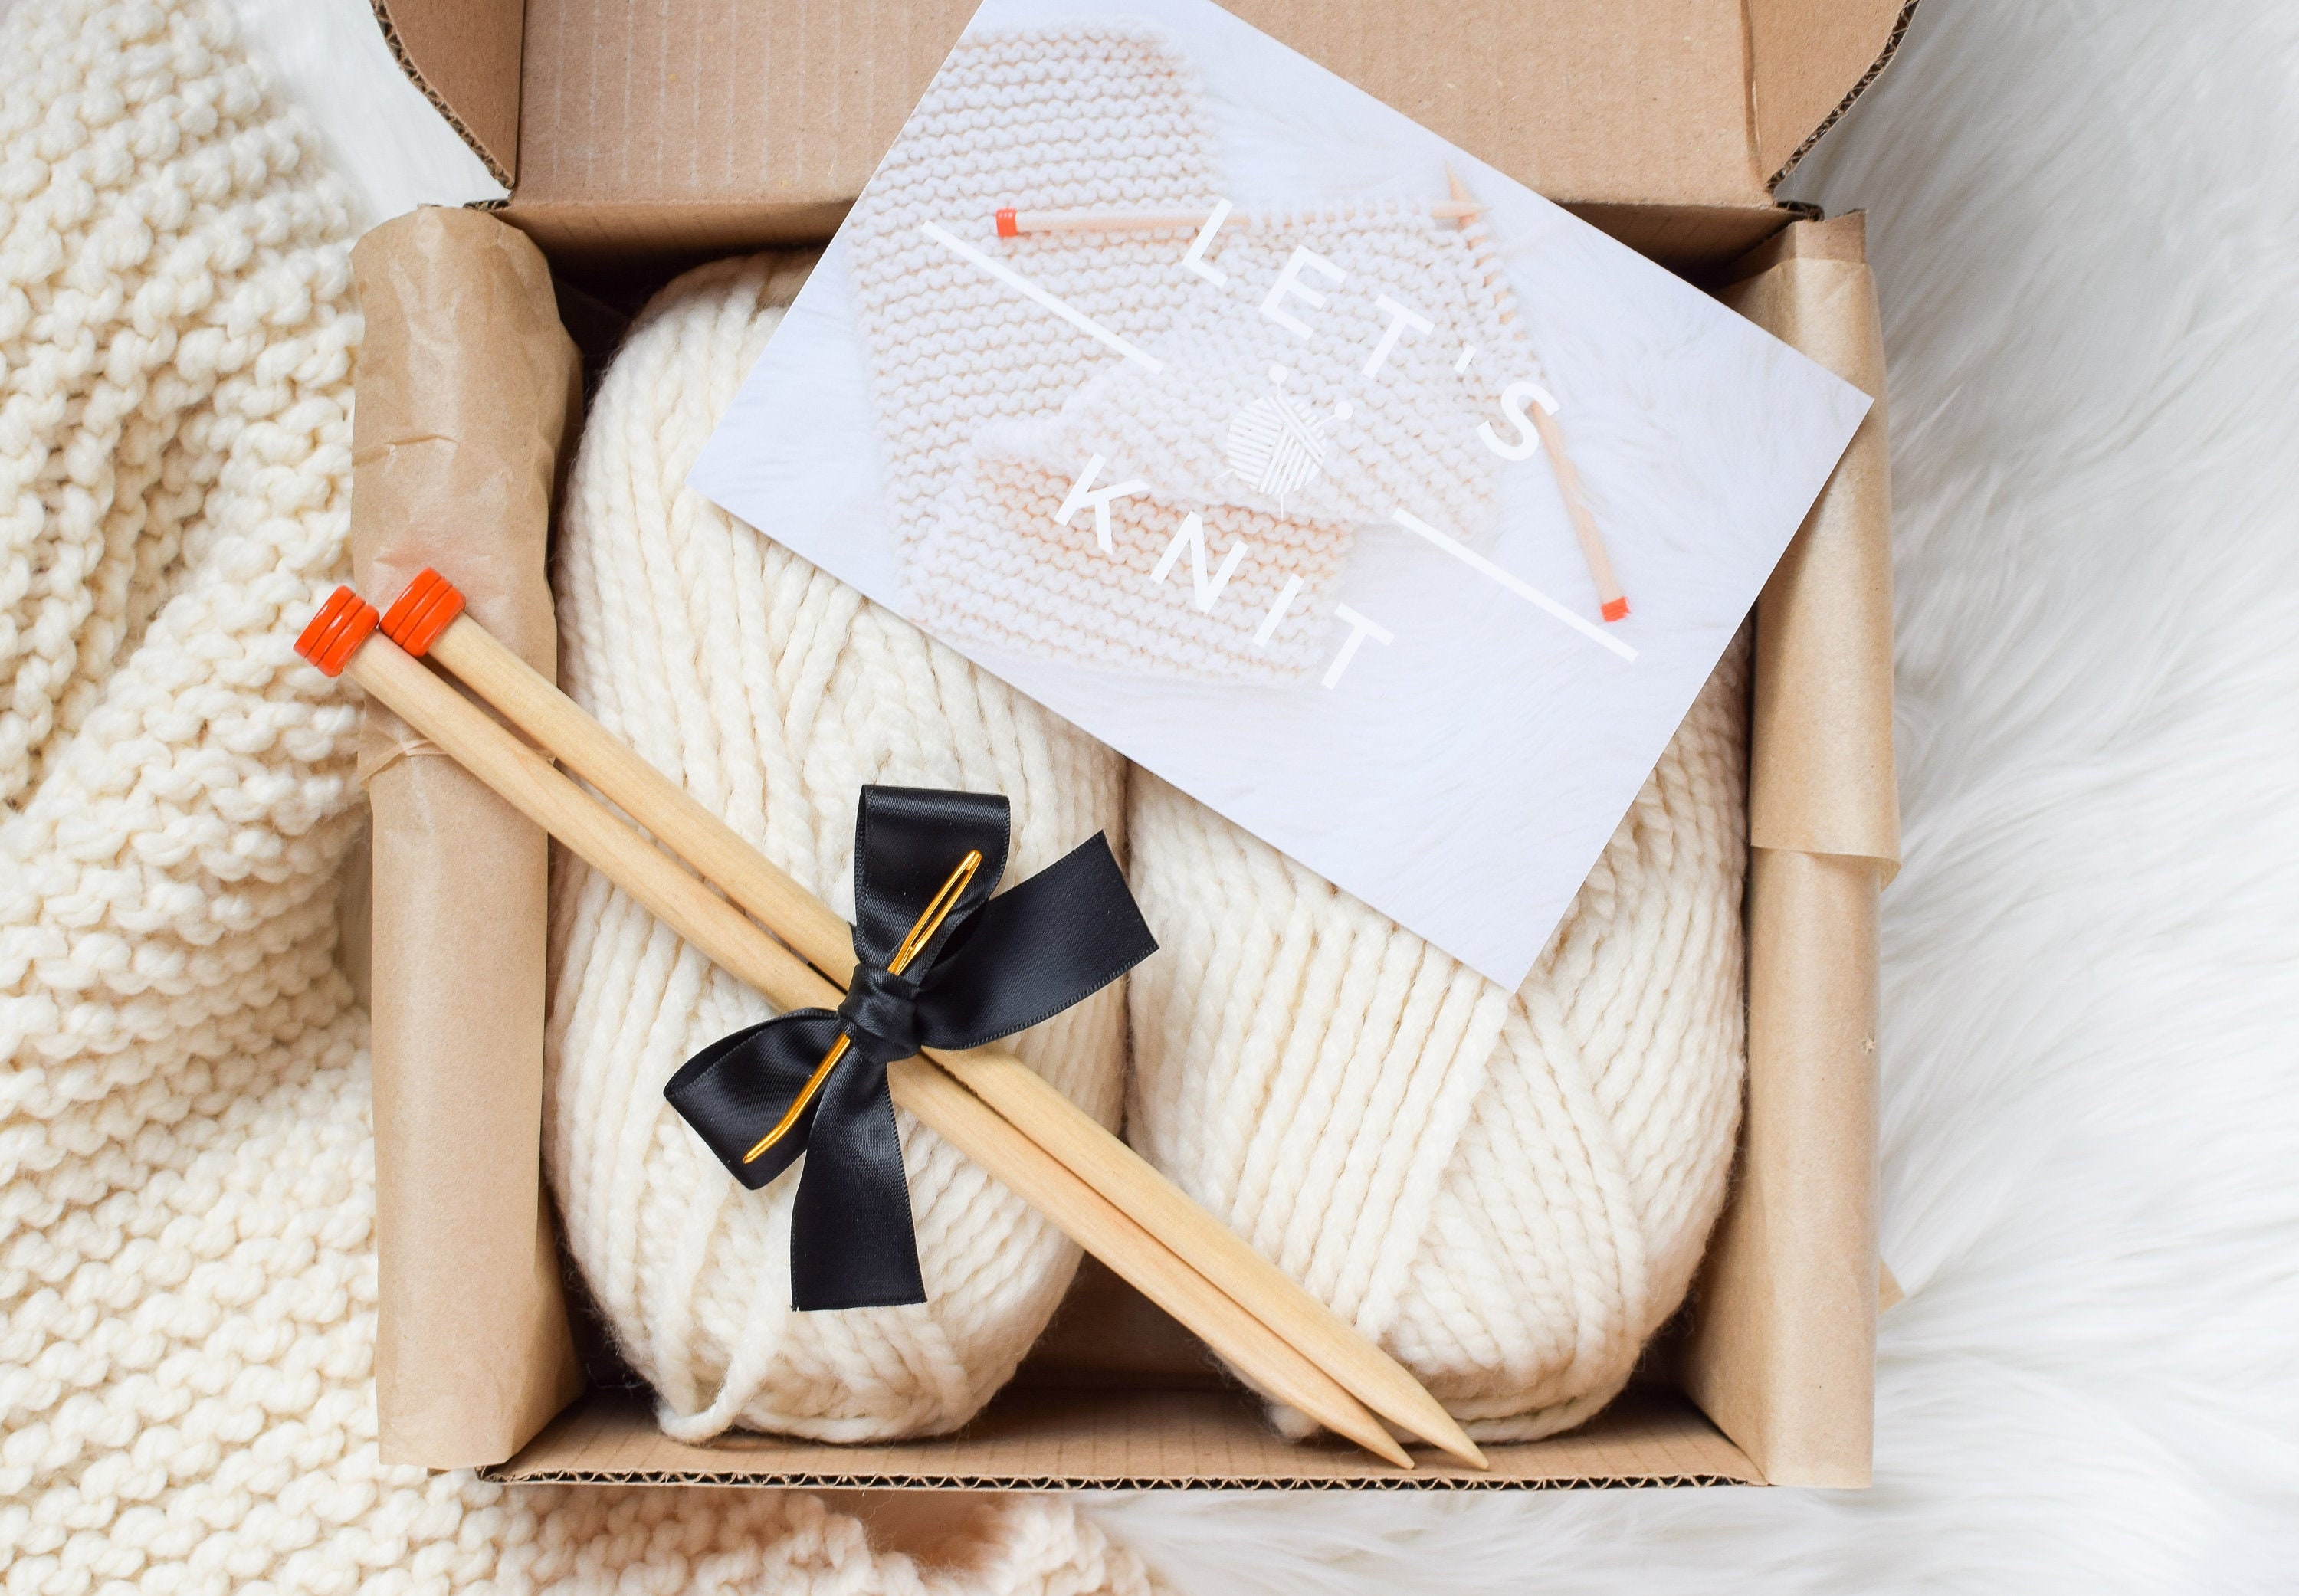 Beginner Knitting Kit